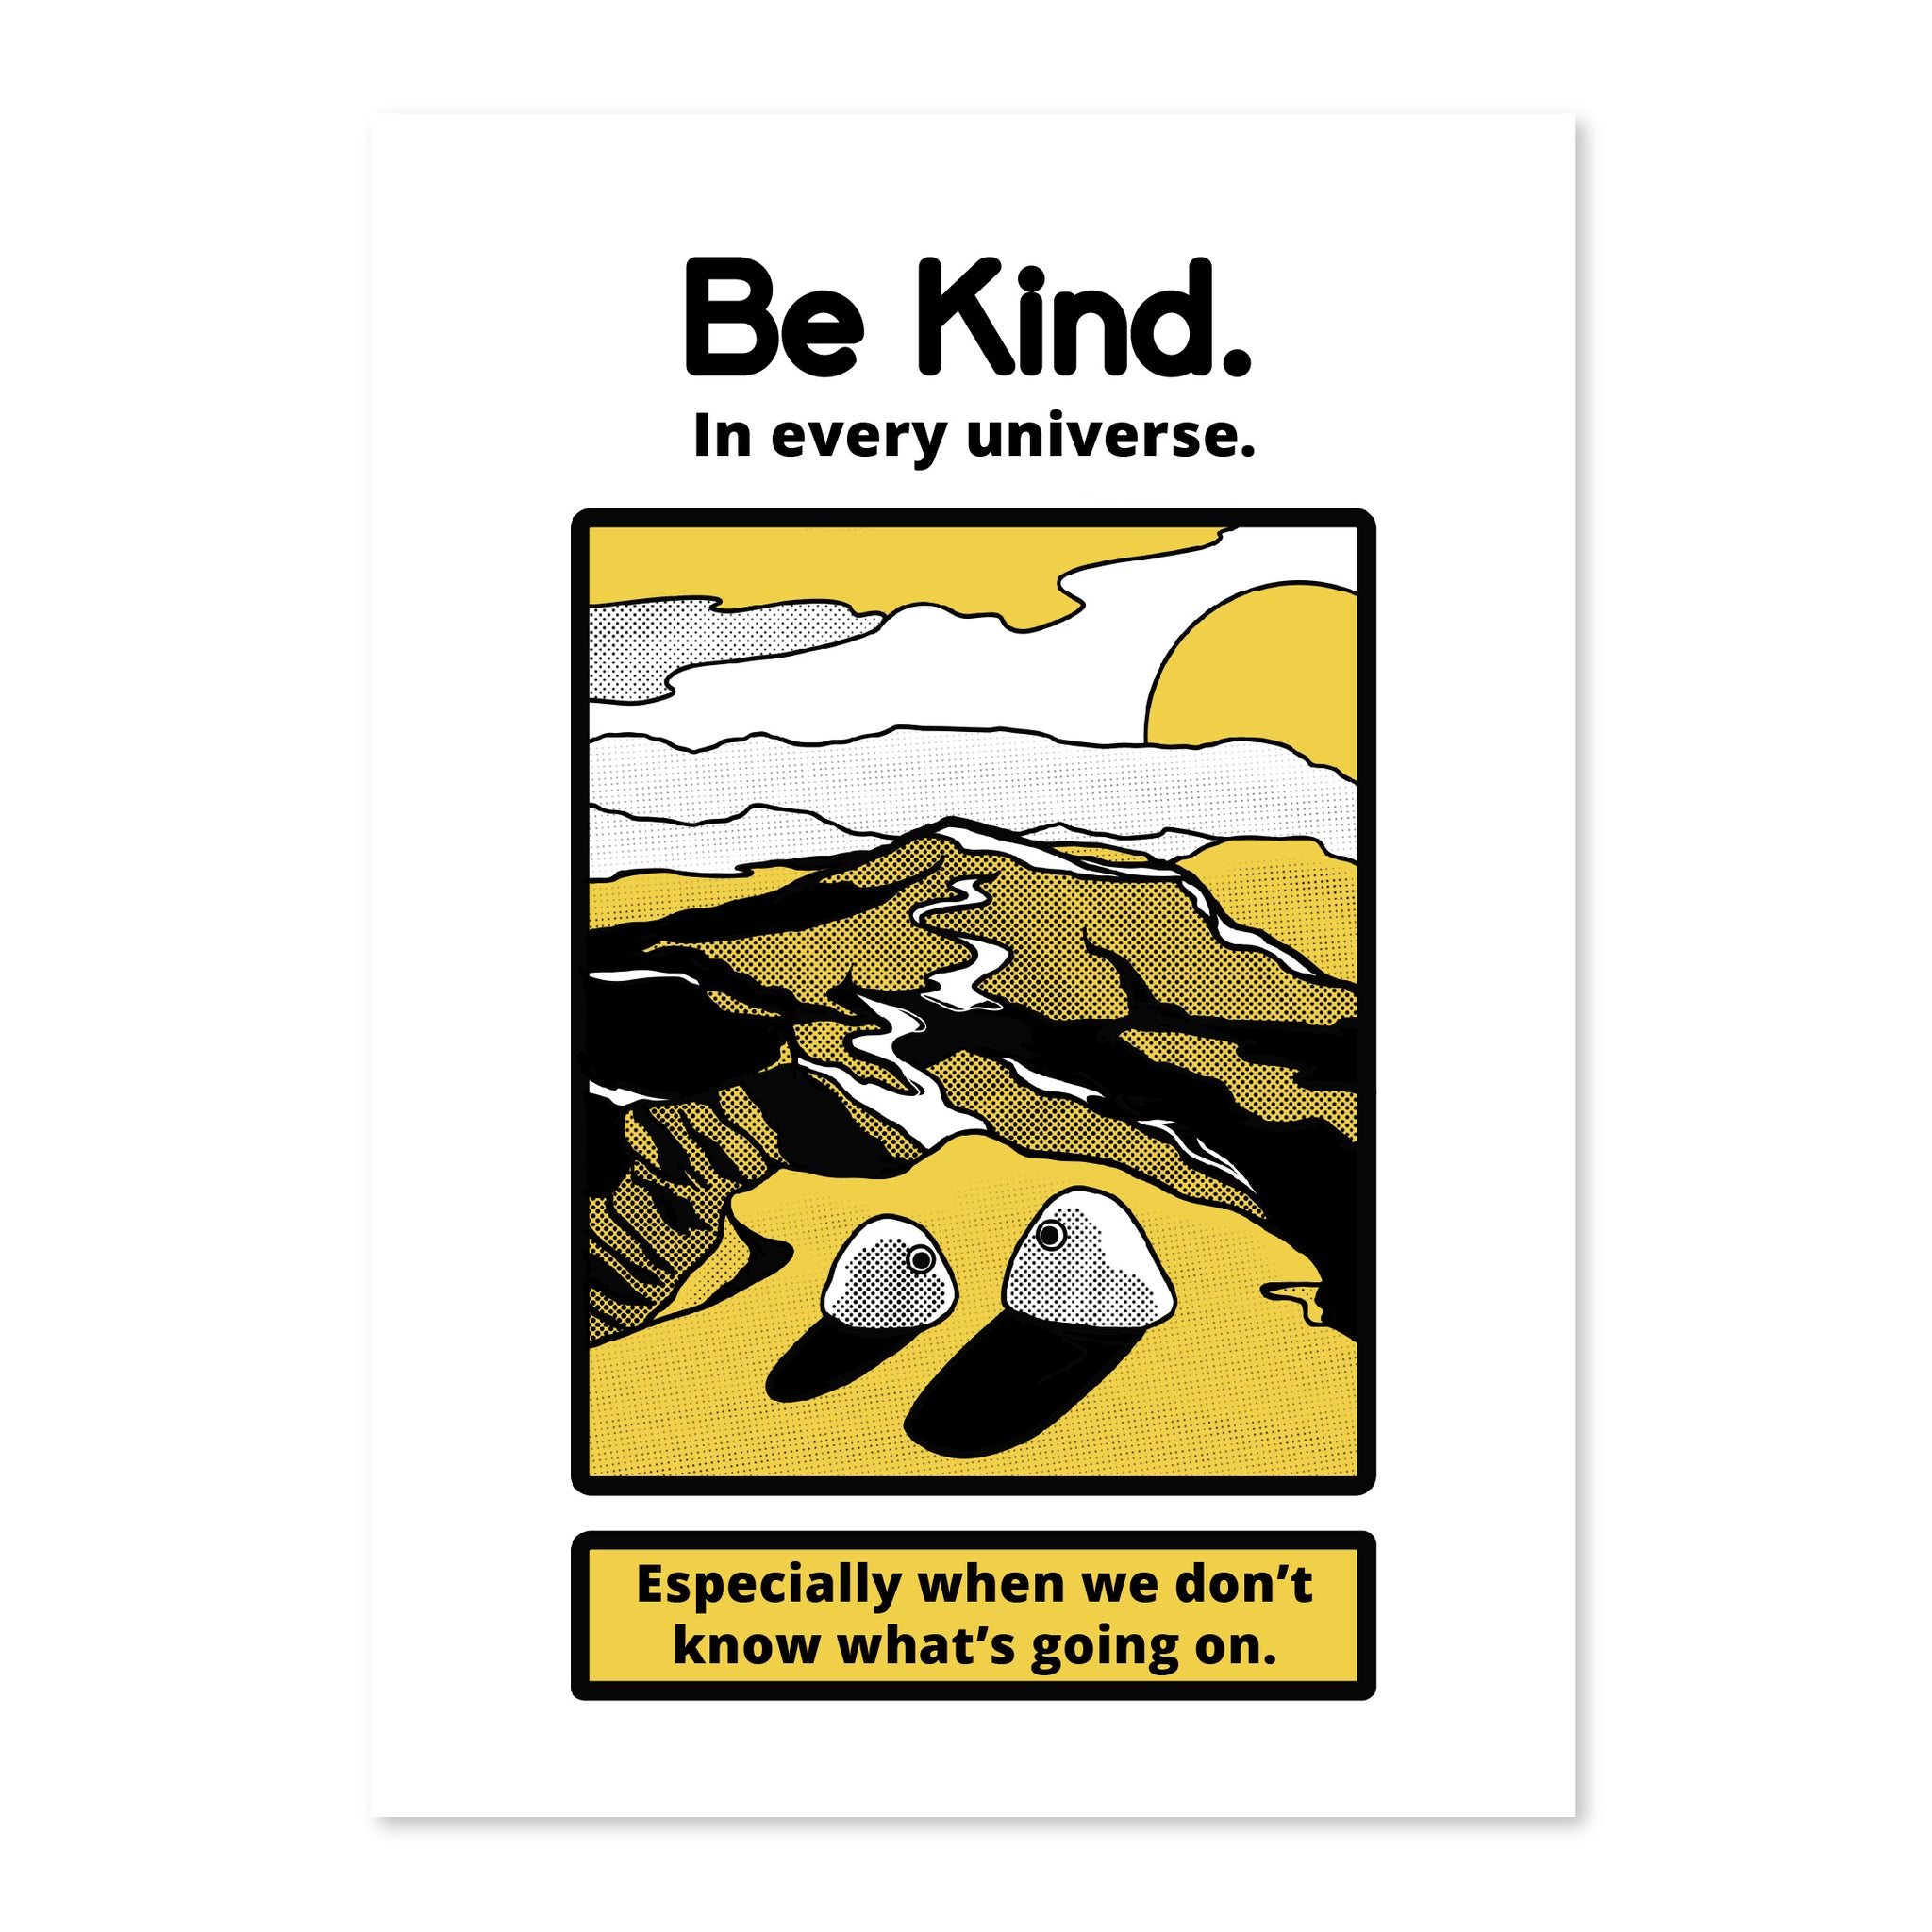 EEAAO Be Kind Print